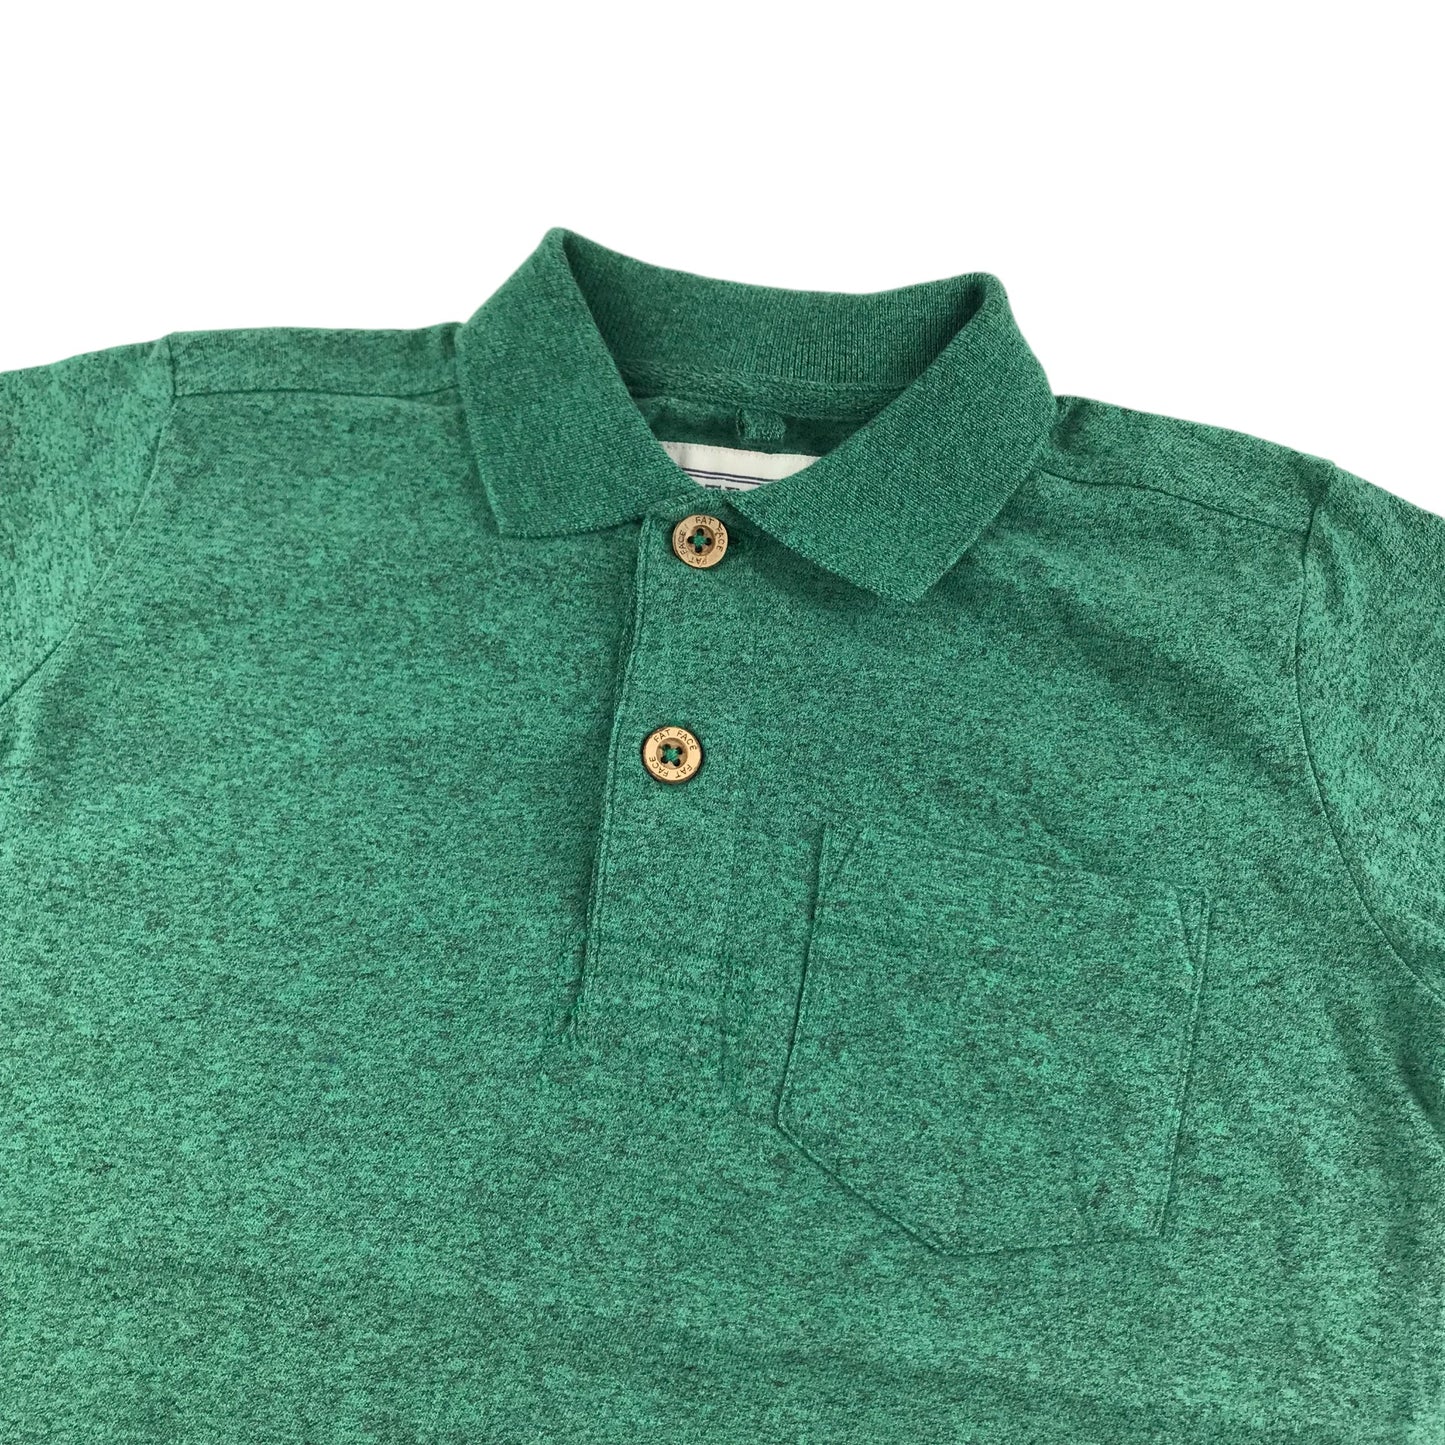 Fatface Polo Shirt Age 6 Green Short Sleeve